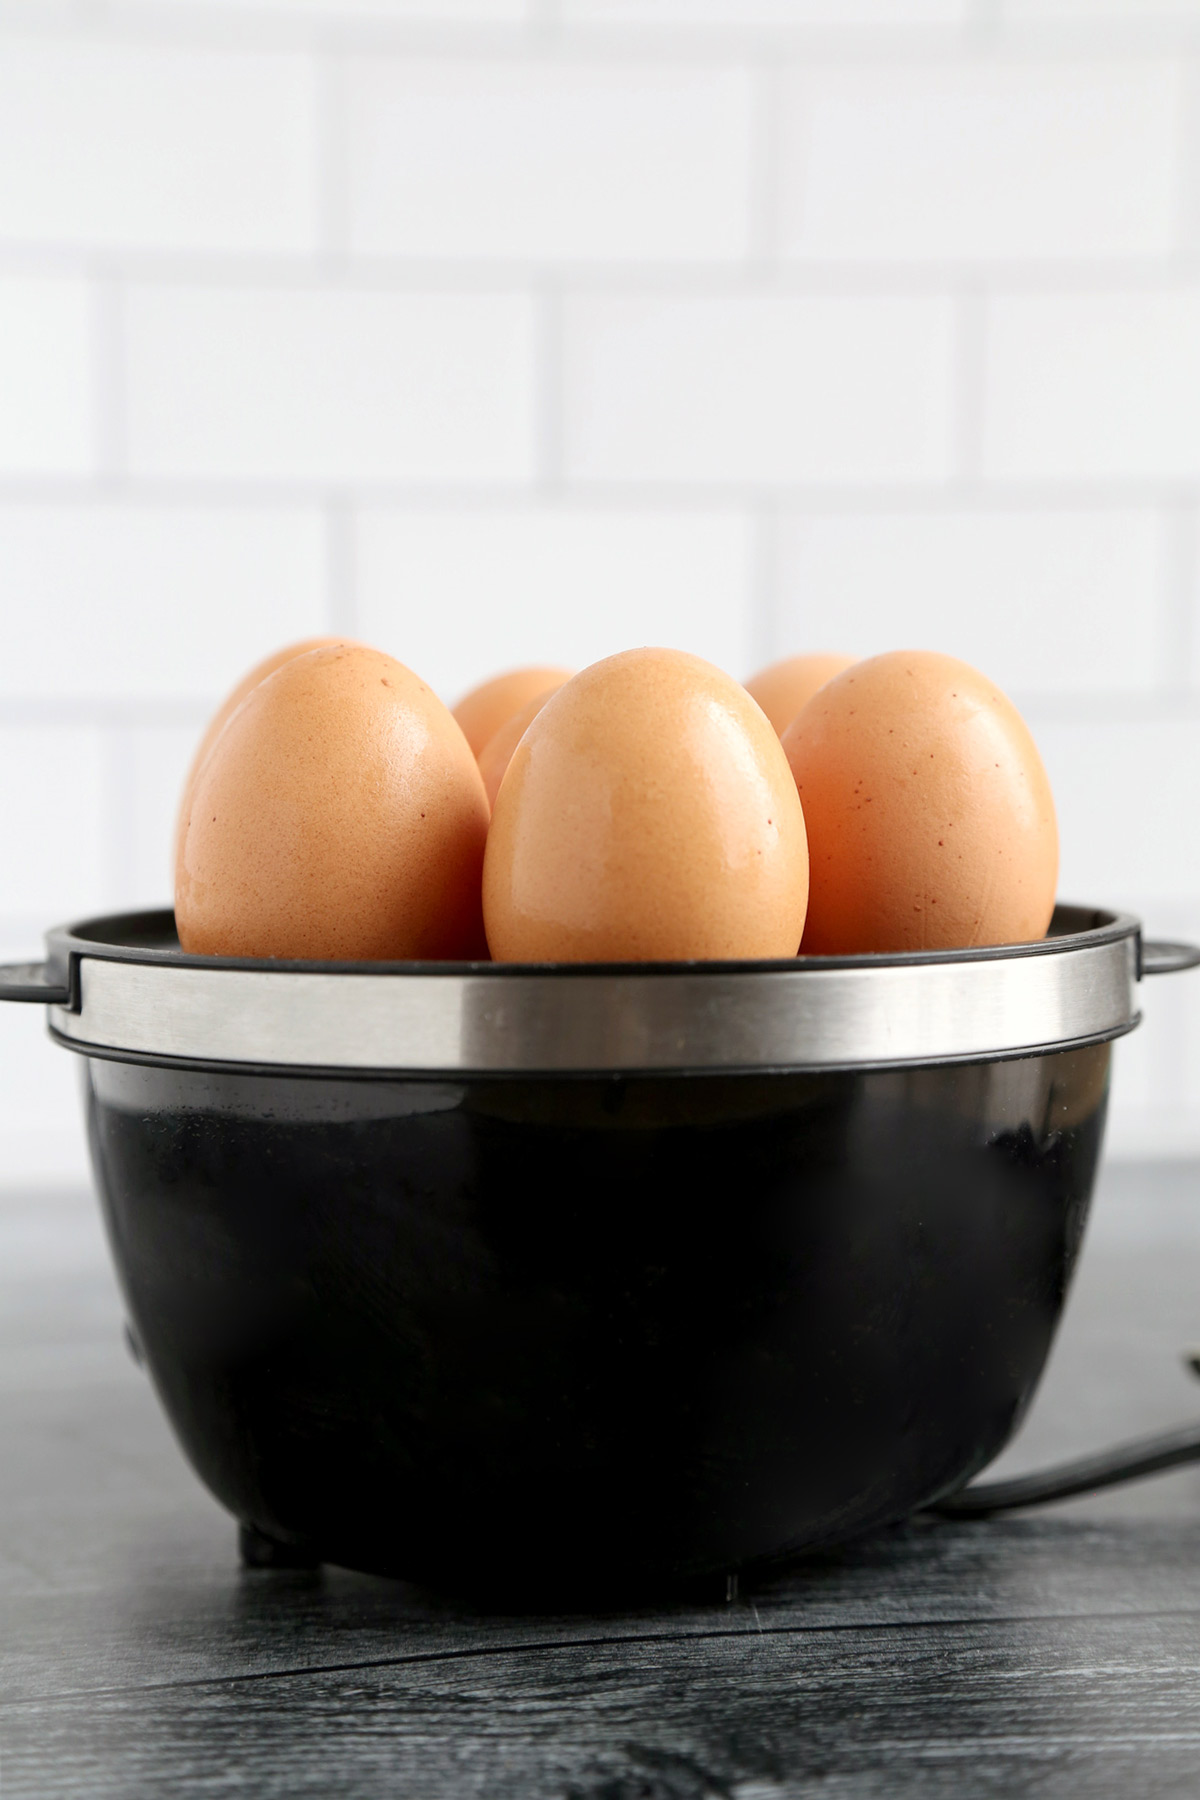 Egg cooker